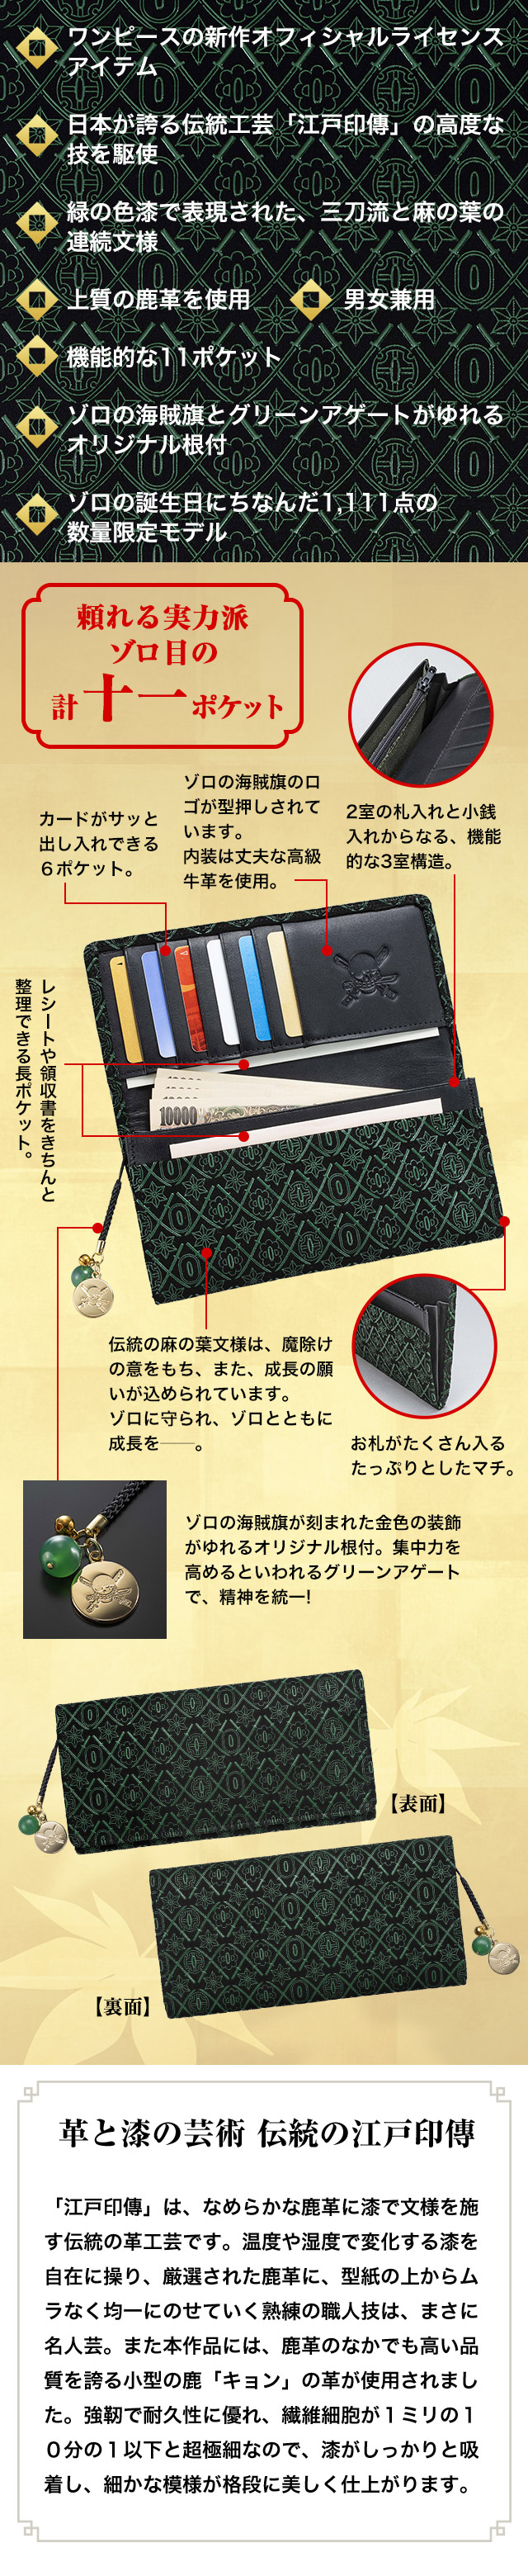 ワンピースの新作オフィシャルライセンスアイテム。日本が誇る伝統工芸「江戸印傳」の高度な技を駆使。緑の色漆で表現された、三刀流と麻の葉の連続文様。上質の鹿革を使用。男女兼用。機能的な11ポケット。ゾロの海賊旗とグリーンアゲートがゆれるオリジナル根付。ゾロの誕生日にちなんだ1,111点の数量限定モデル。　革と漆の芸術 伝統の江戸印傳　「江戸印傳」は、なめらかな鹿革に漆で文様を施す伝統の革工芸です。温度や湿度で変化する漆を自在に操り、厳選された鹿革に、型紙の上からムラなく均一にのせていく熟練の職人技は、まさに名人芸。また本作品には、鹿革のなかでも高い品質を誇る小型の鹿「キョン」の革が使用されました。強靭で耐久性に優れ、繊維細胞が１ミリの１０分の１以下と超極細なので、漆がしっかりと吸着し、細かな模様が格段に美しく仕上がります。